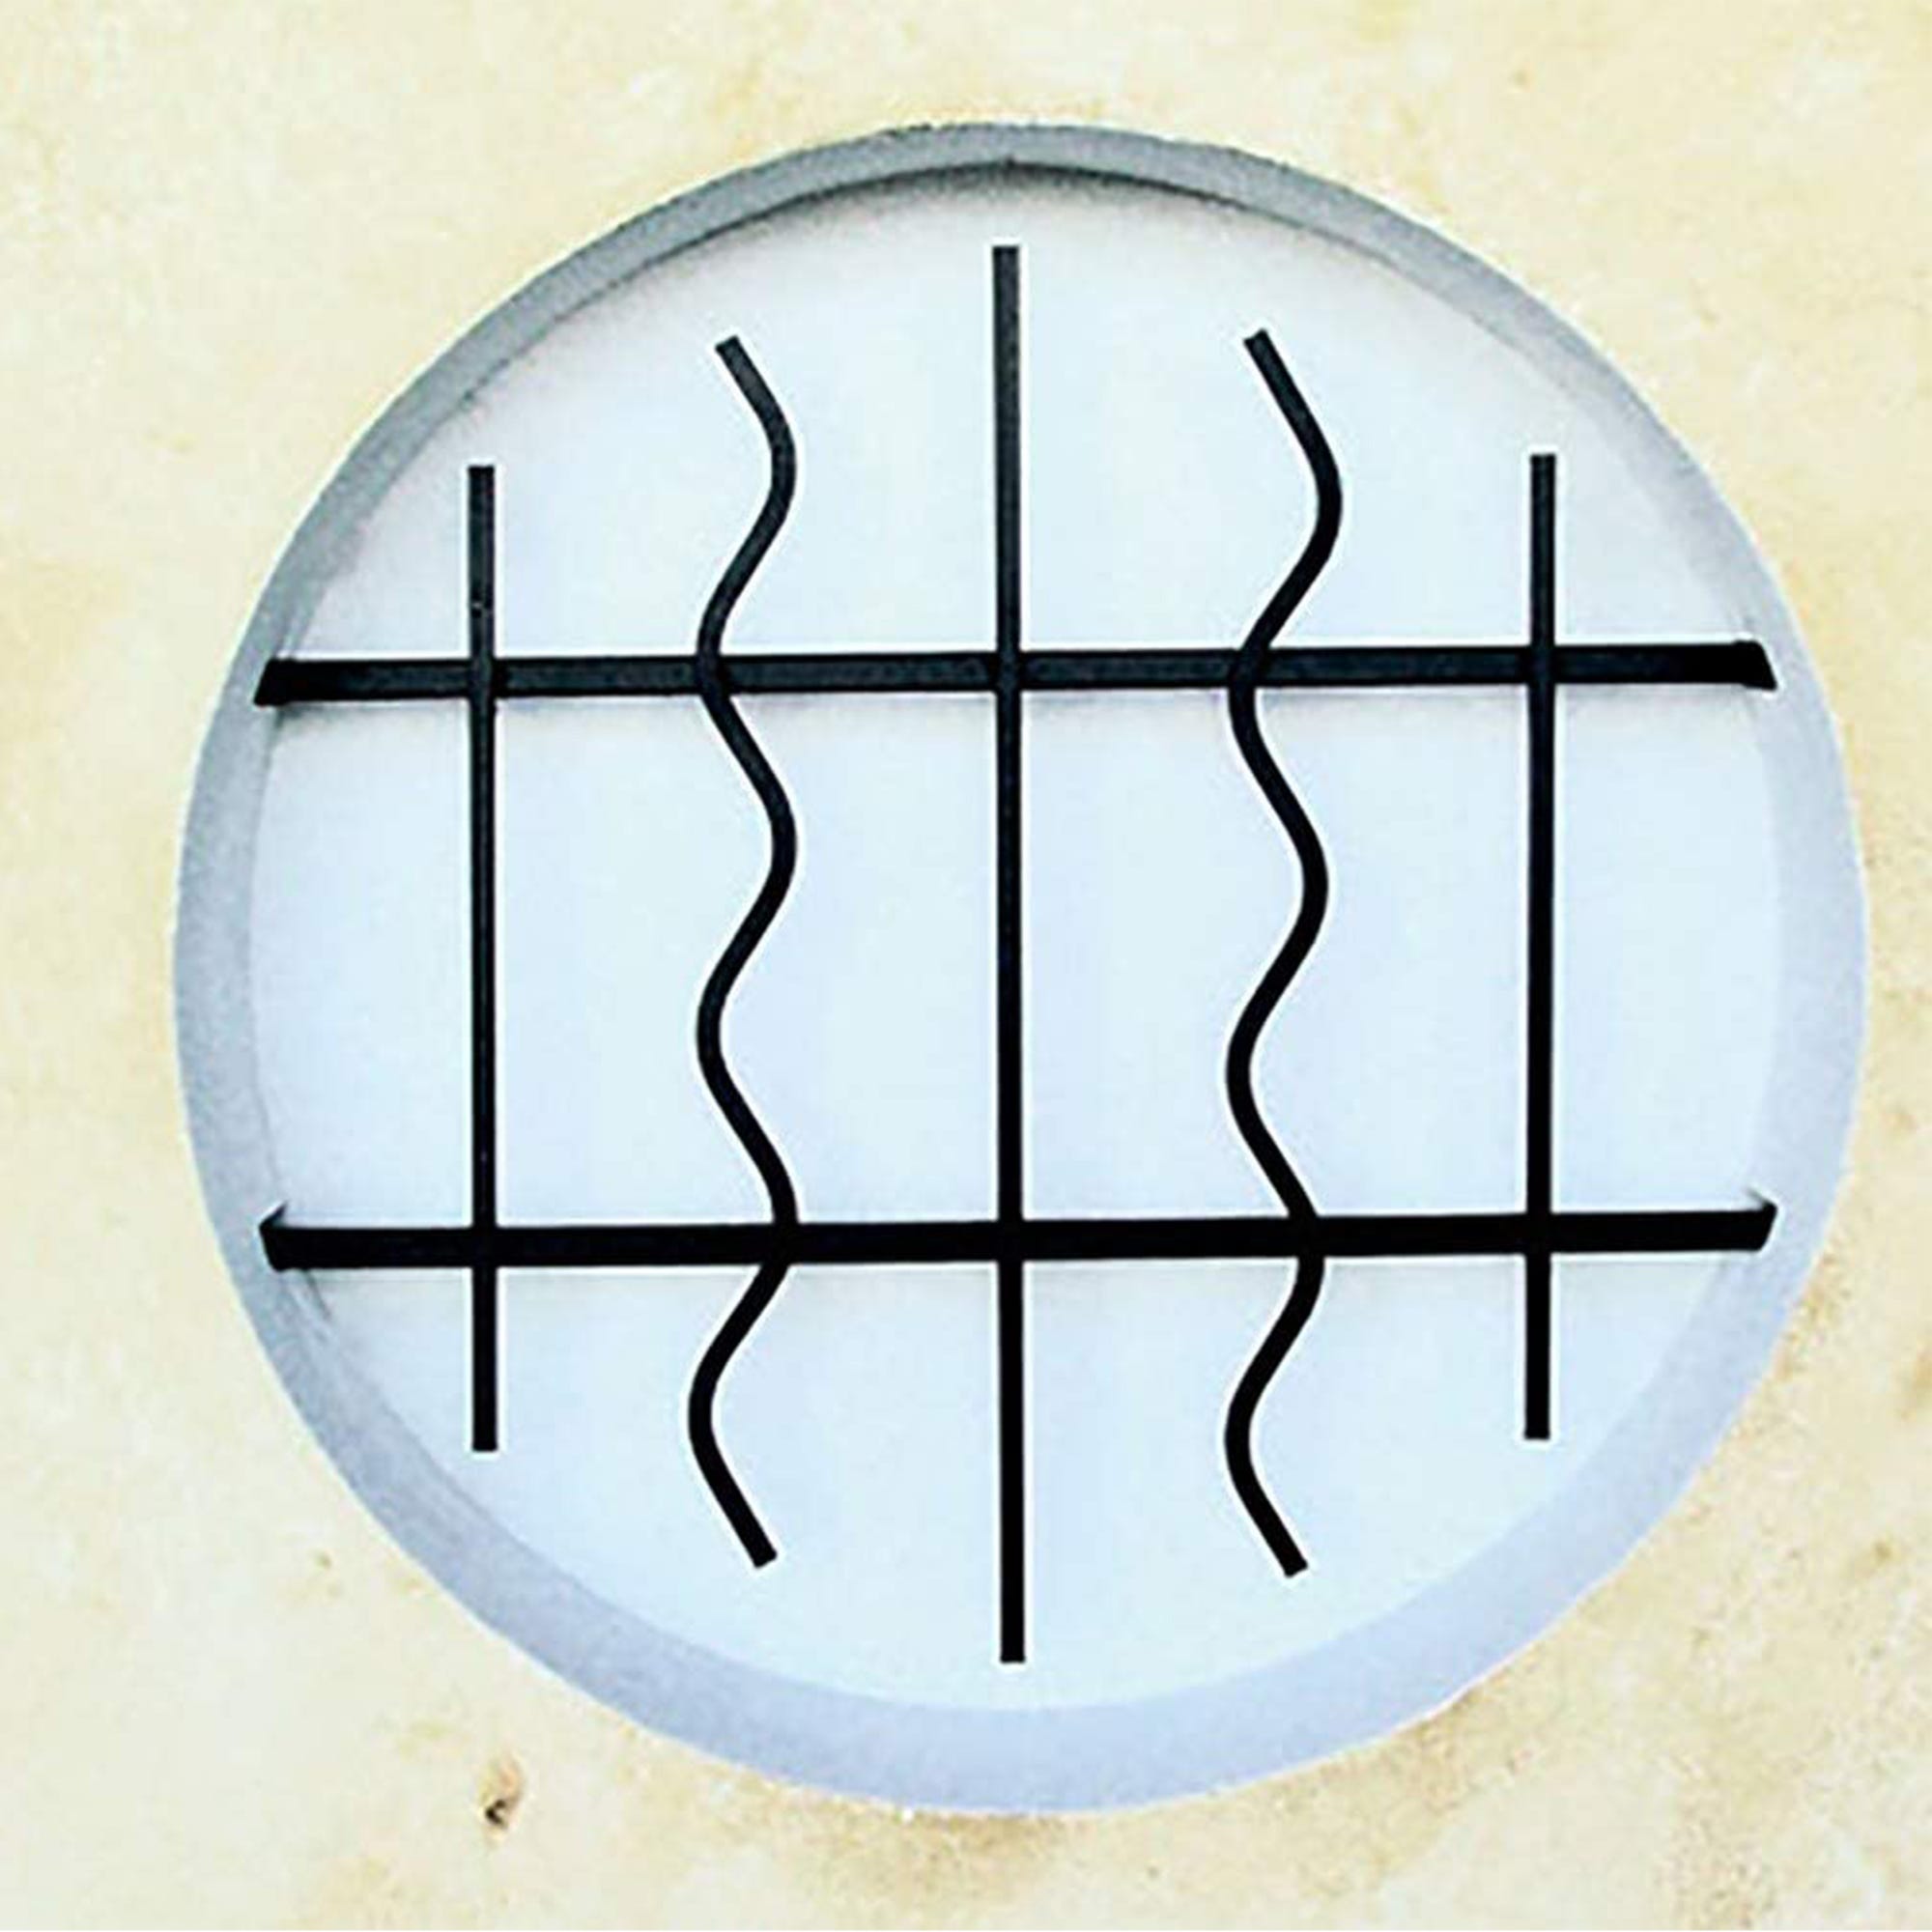 Grille de Defense Azur diametre 100 cm pour Fenetre ronde (côte tableau) 2